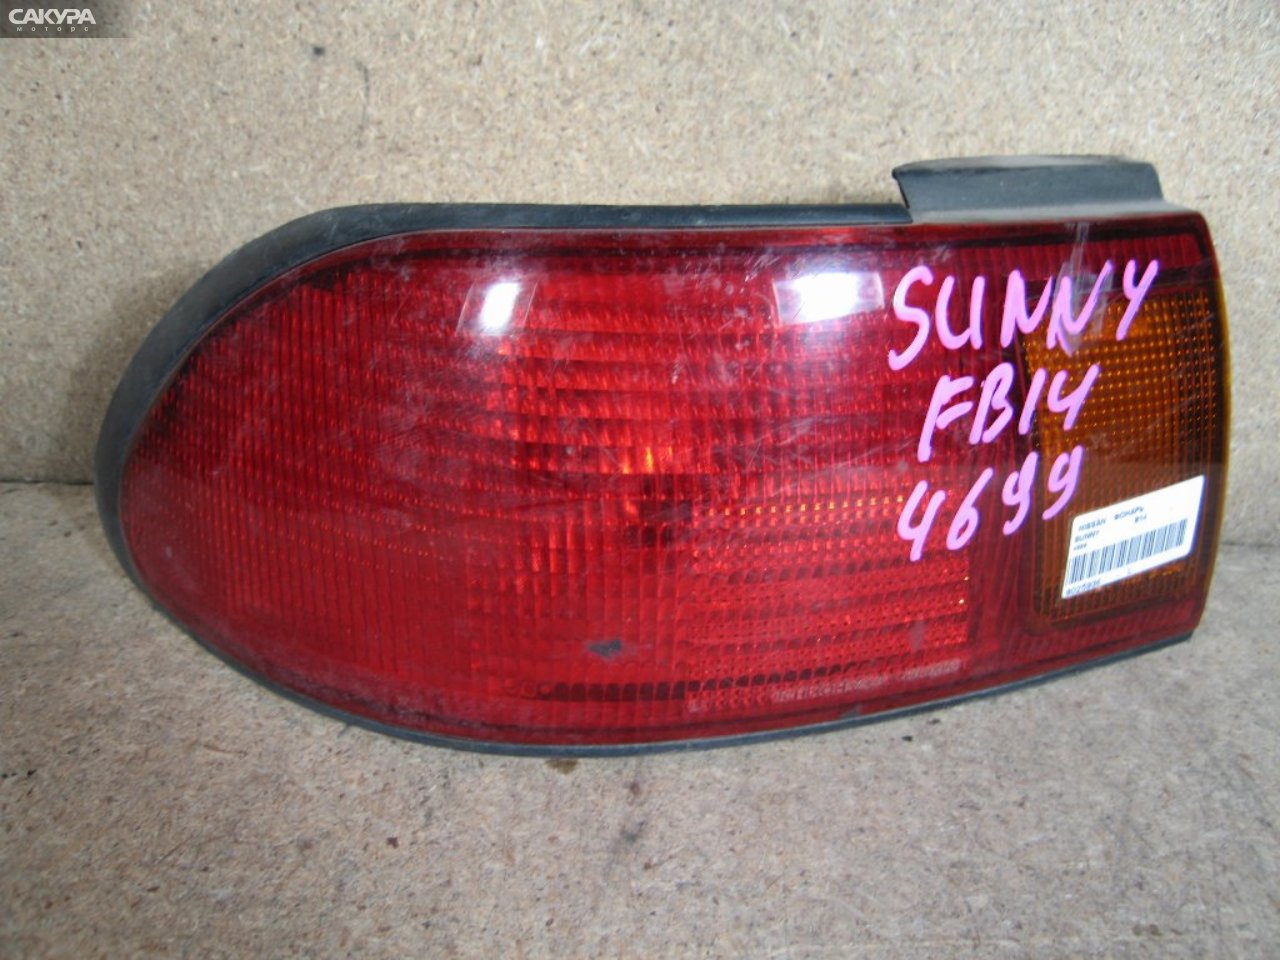 Фонарь стоп-сигнала левый Nissan Sunny B14 4699: купить в Сакура Абакан.